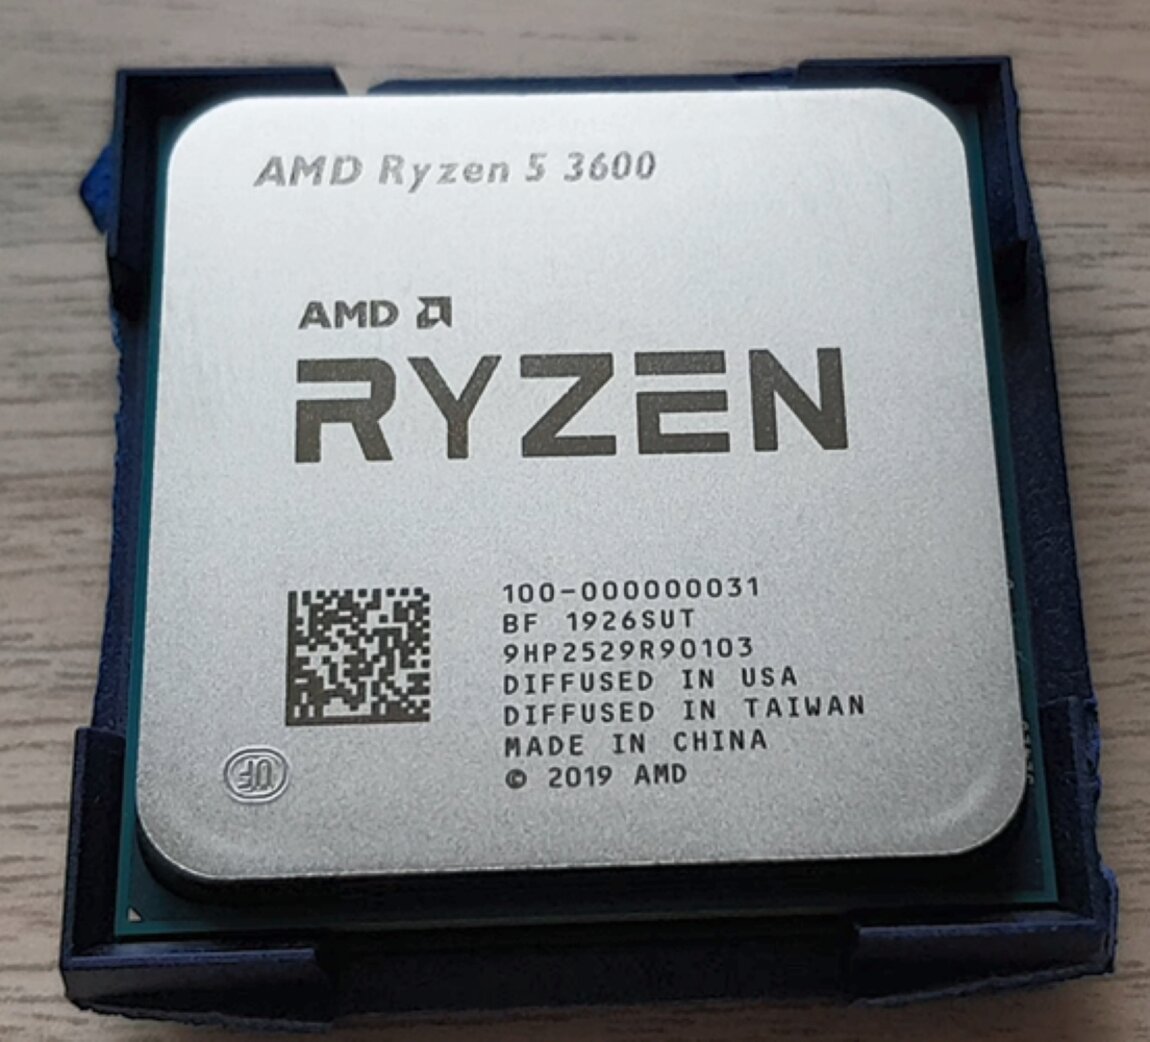 5 3600 сокет. AMD Ryzen 5 3600. AMD Ryzen 5 3600 OEM. Процессор AMD Ryzen 5 3600 am4. Процессор AMD Ryzen 5 3600x OEM am4 Matisse.